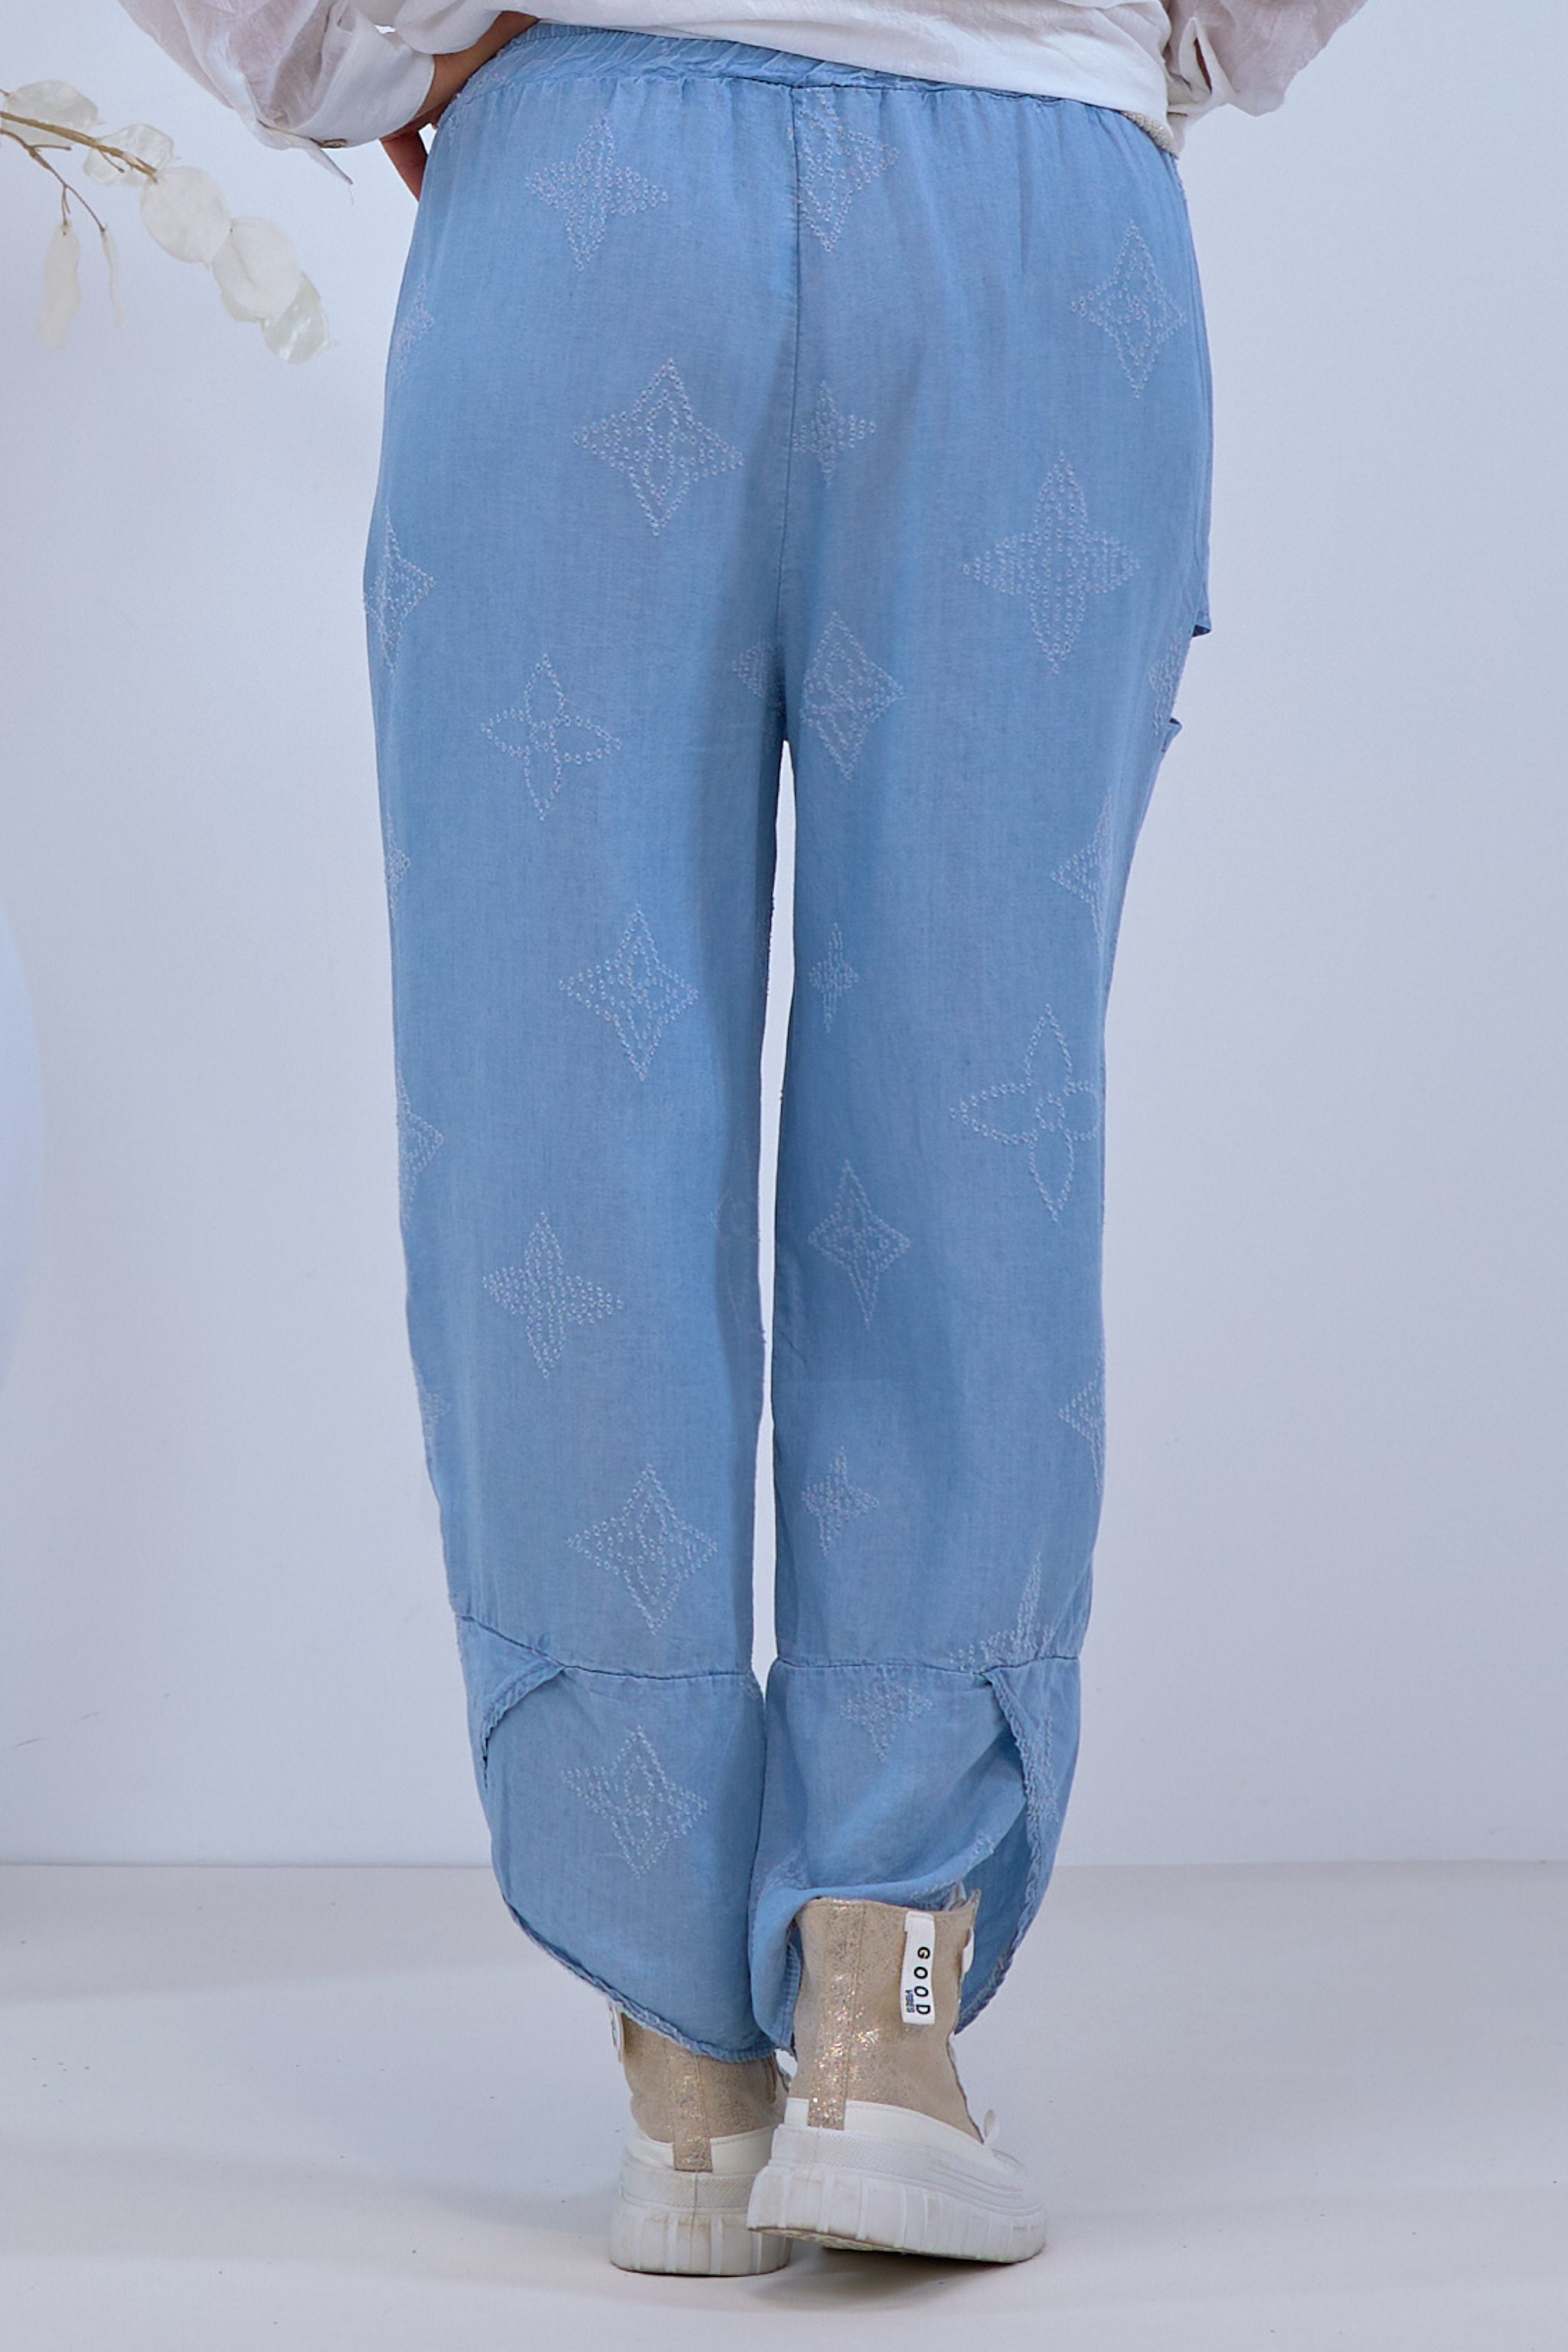 Damen lockere Hose mit Muster in blau von Trends & Lifestyle Deutschland GmbH